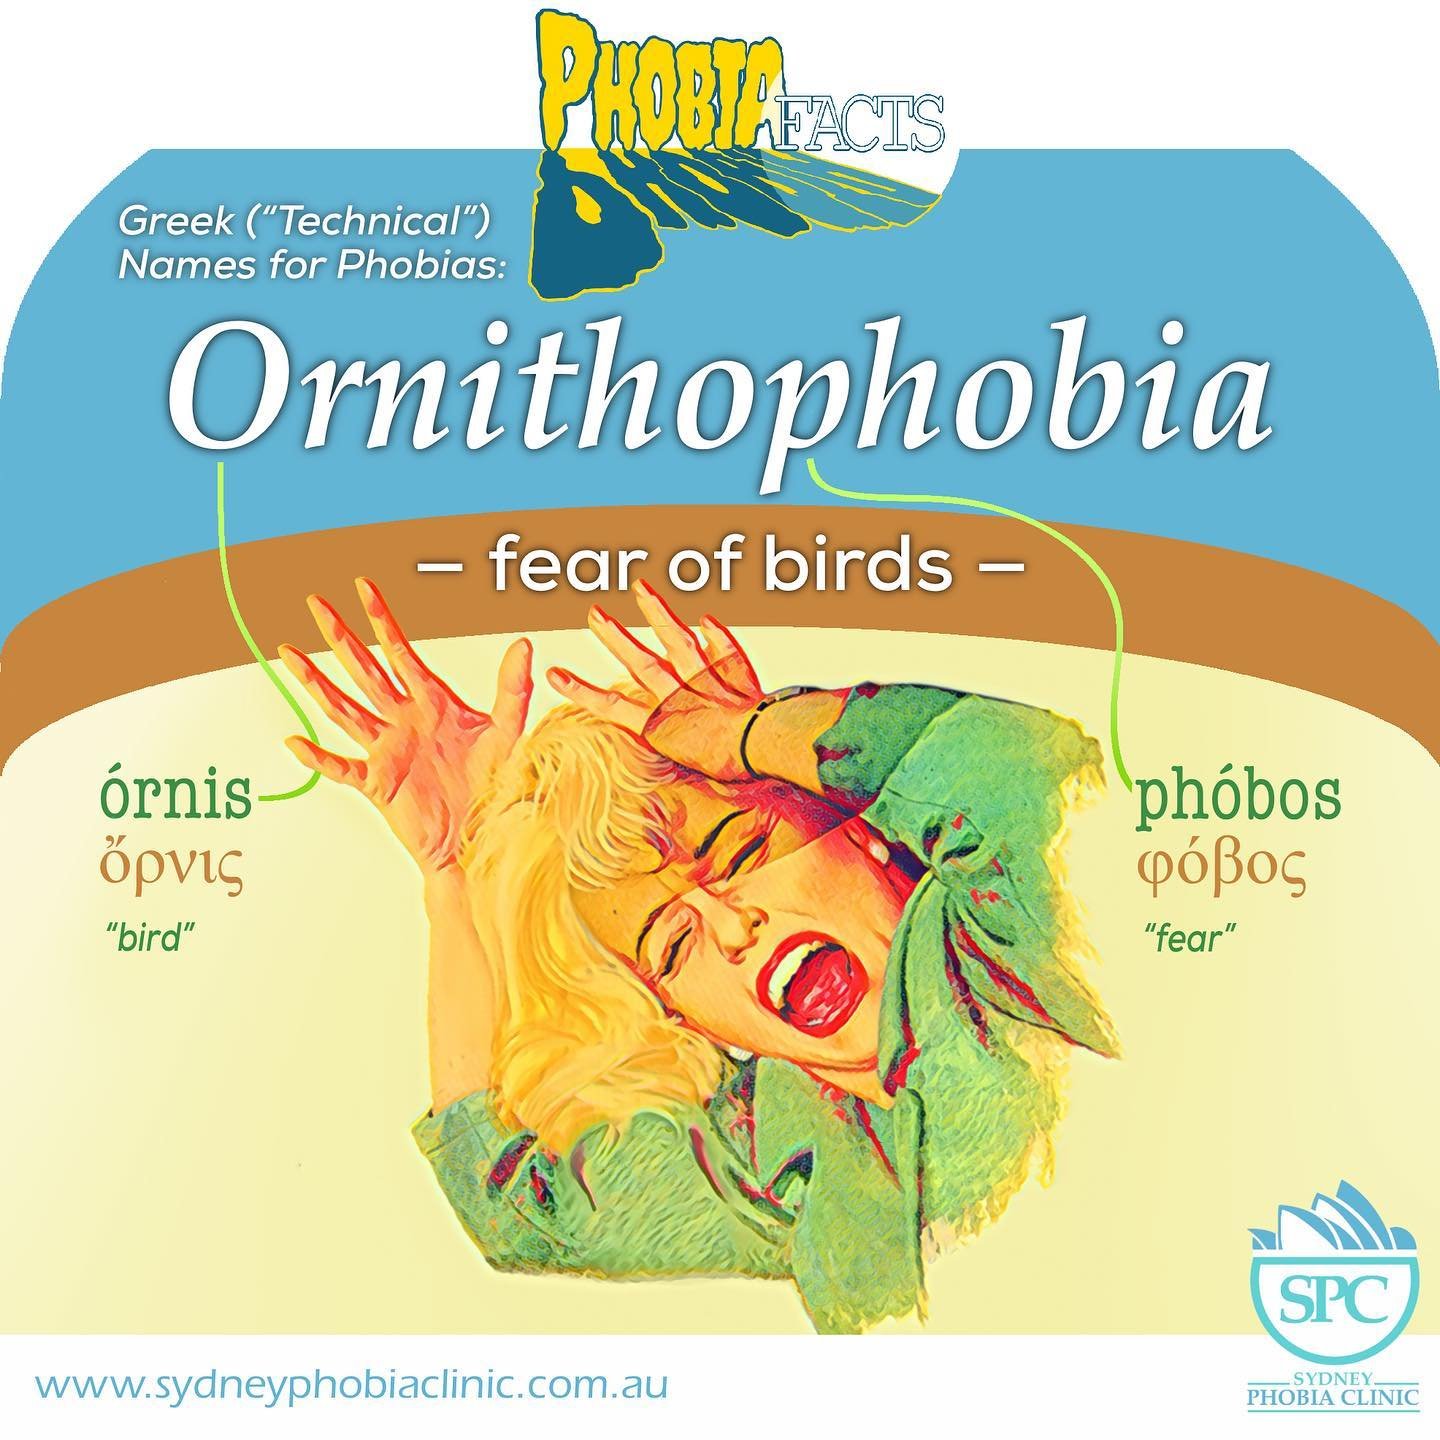 ORNITHOPHOBIA &mdash; fear of birds